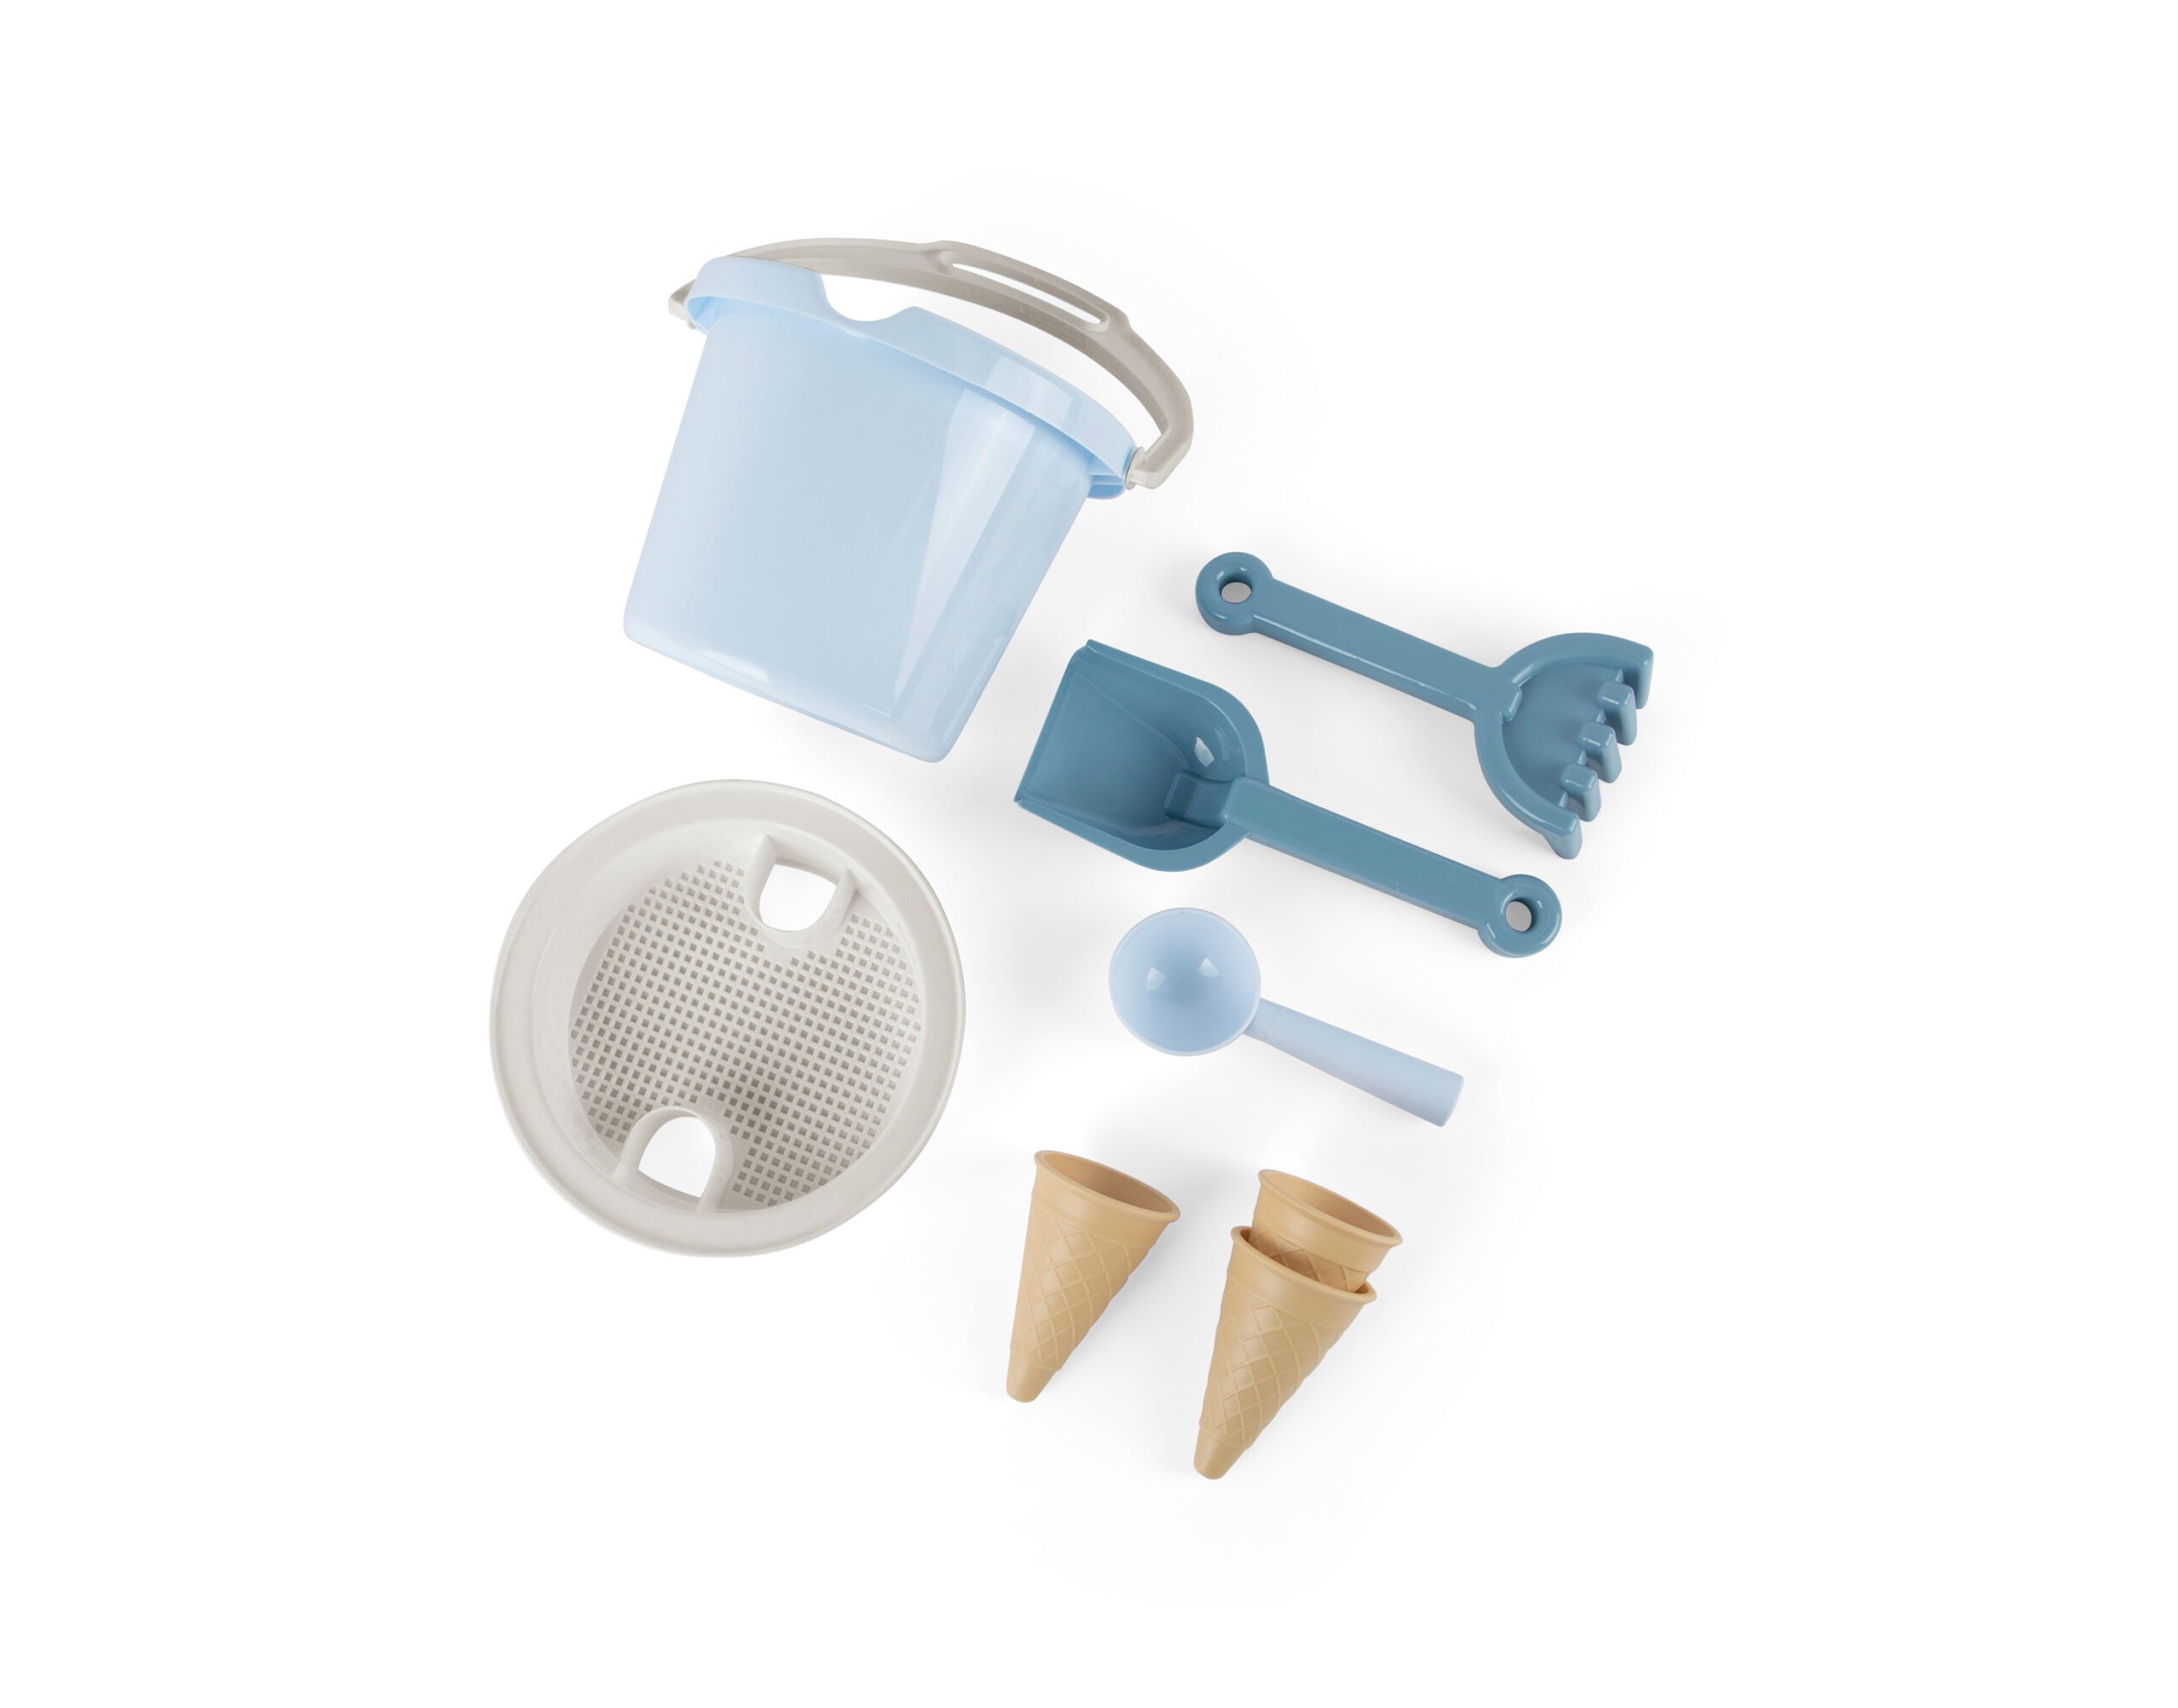 Dantoy - Bucket set w. Ice cream cones - Blue (4802)